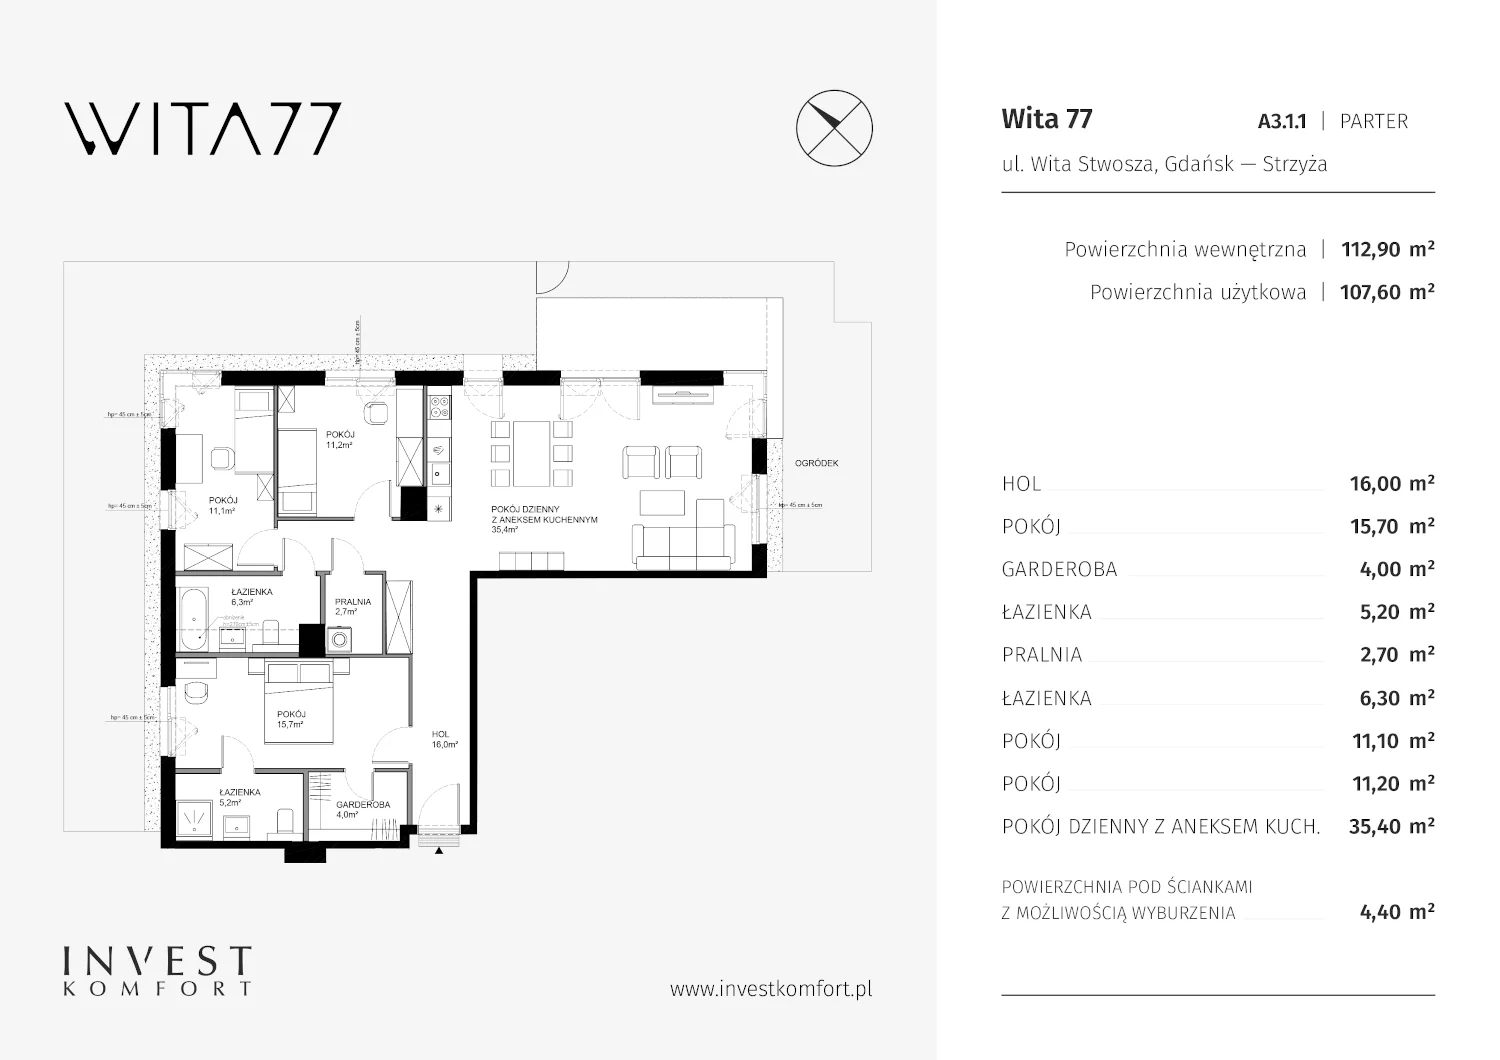 Apartament 112,90 m², parter, oferta nr A3.1.1, Wita 77, Gdańsk, Strzyża, ul. Wita Stwosza 77